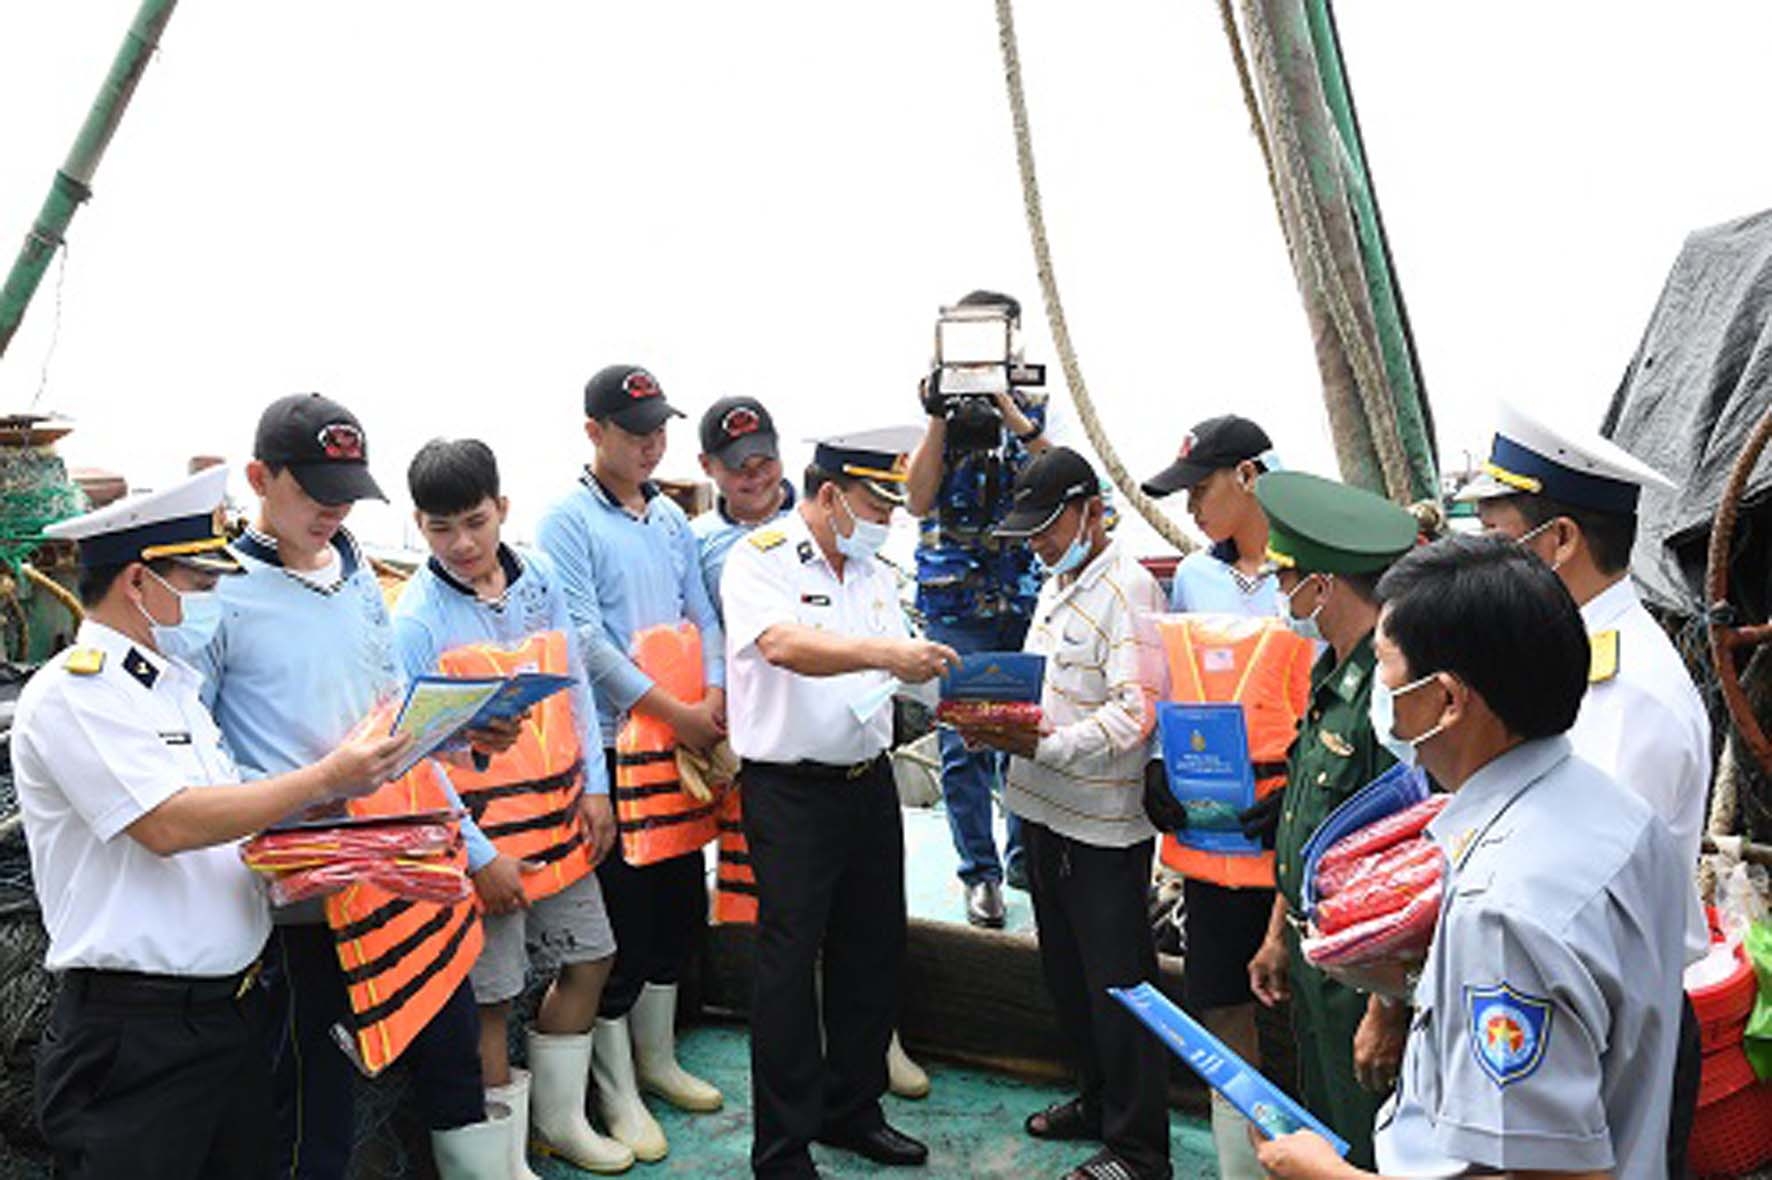 第2区海军向富安省的渔民分发政府总理第45号的宣传材料